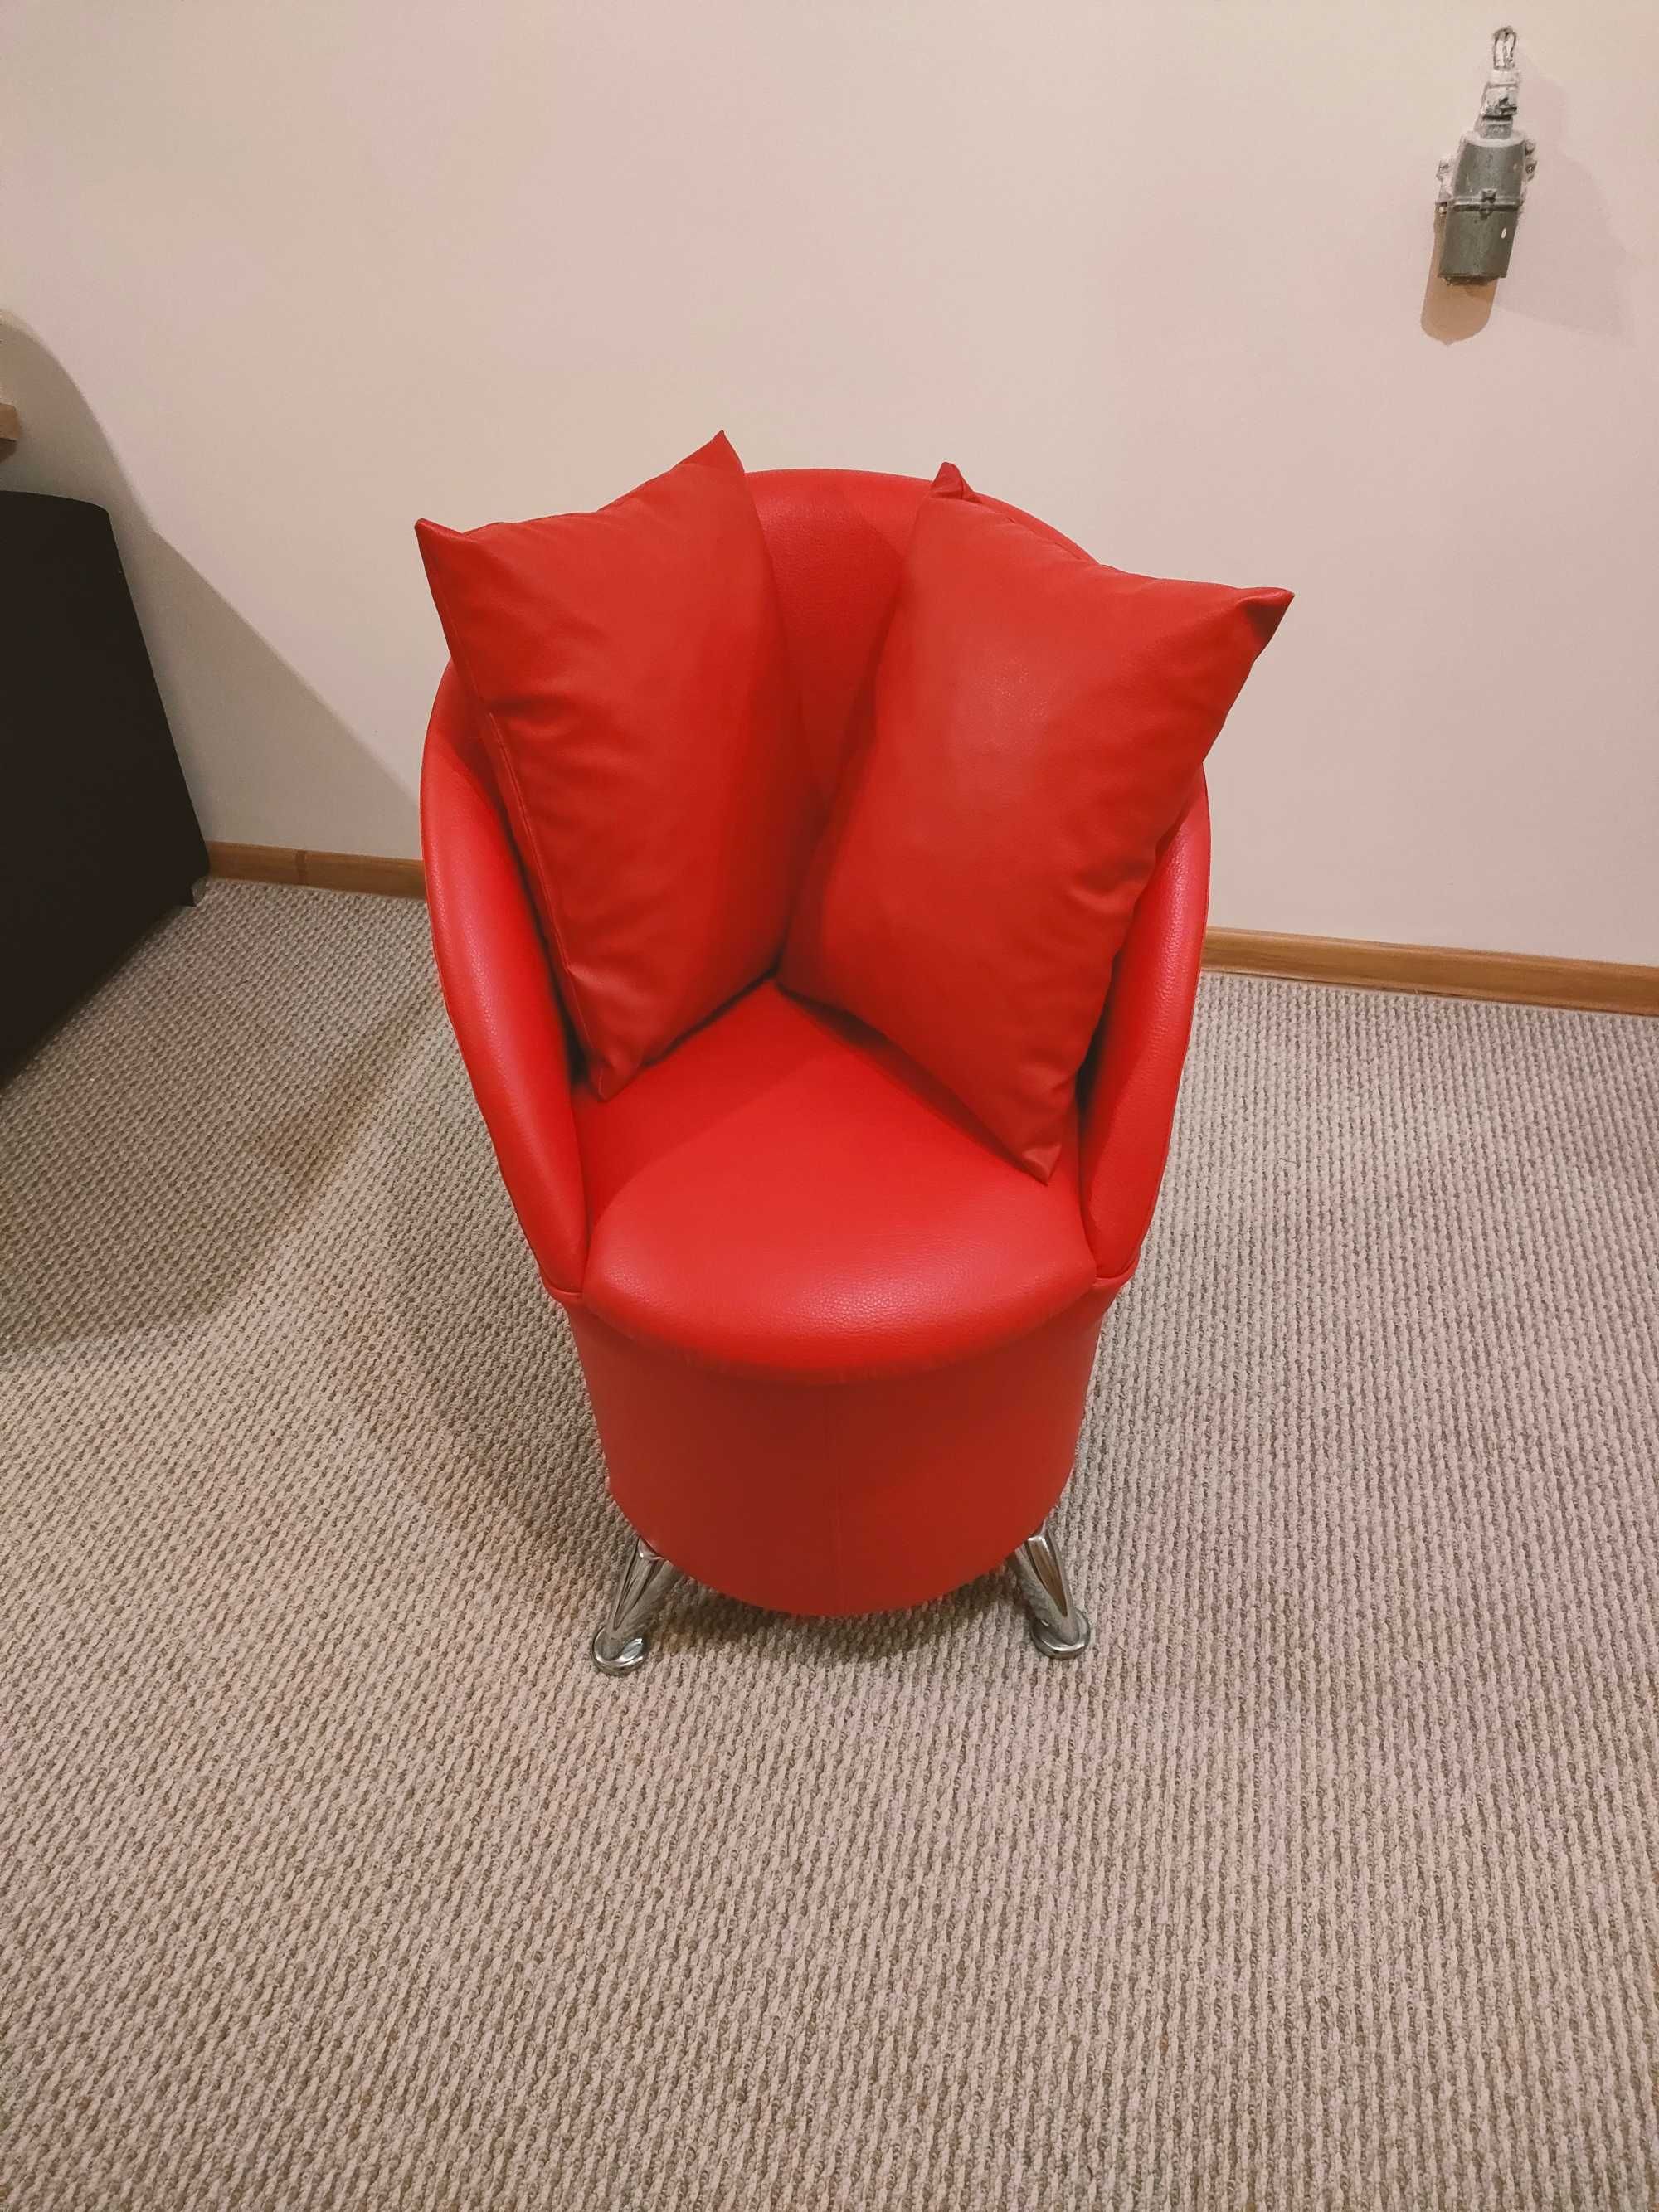 stylowy czerwony fotel - pufa z poduszkami